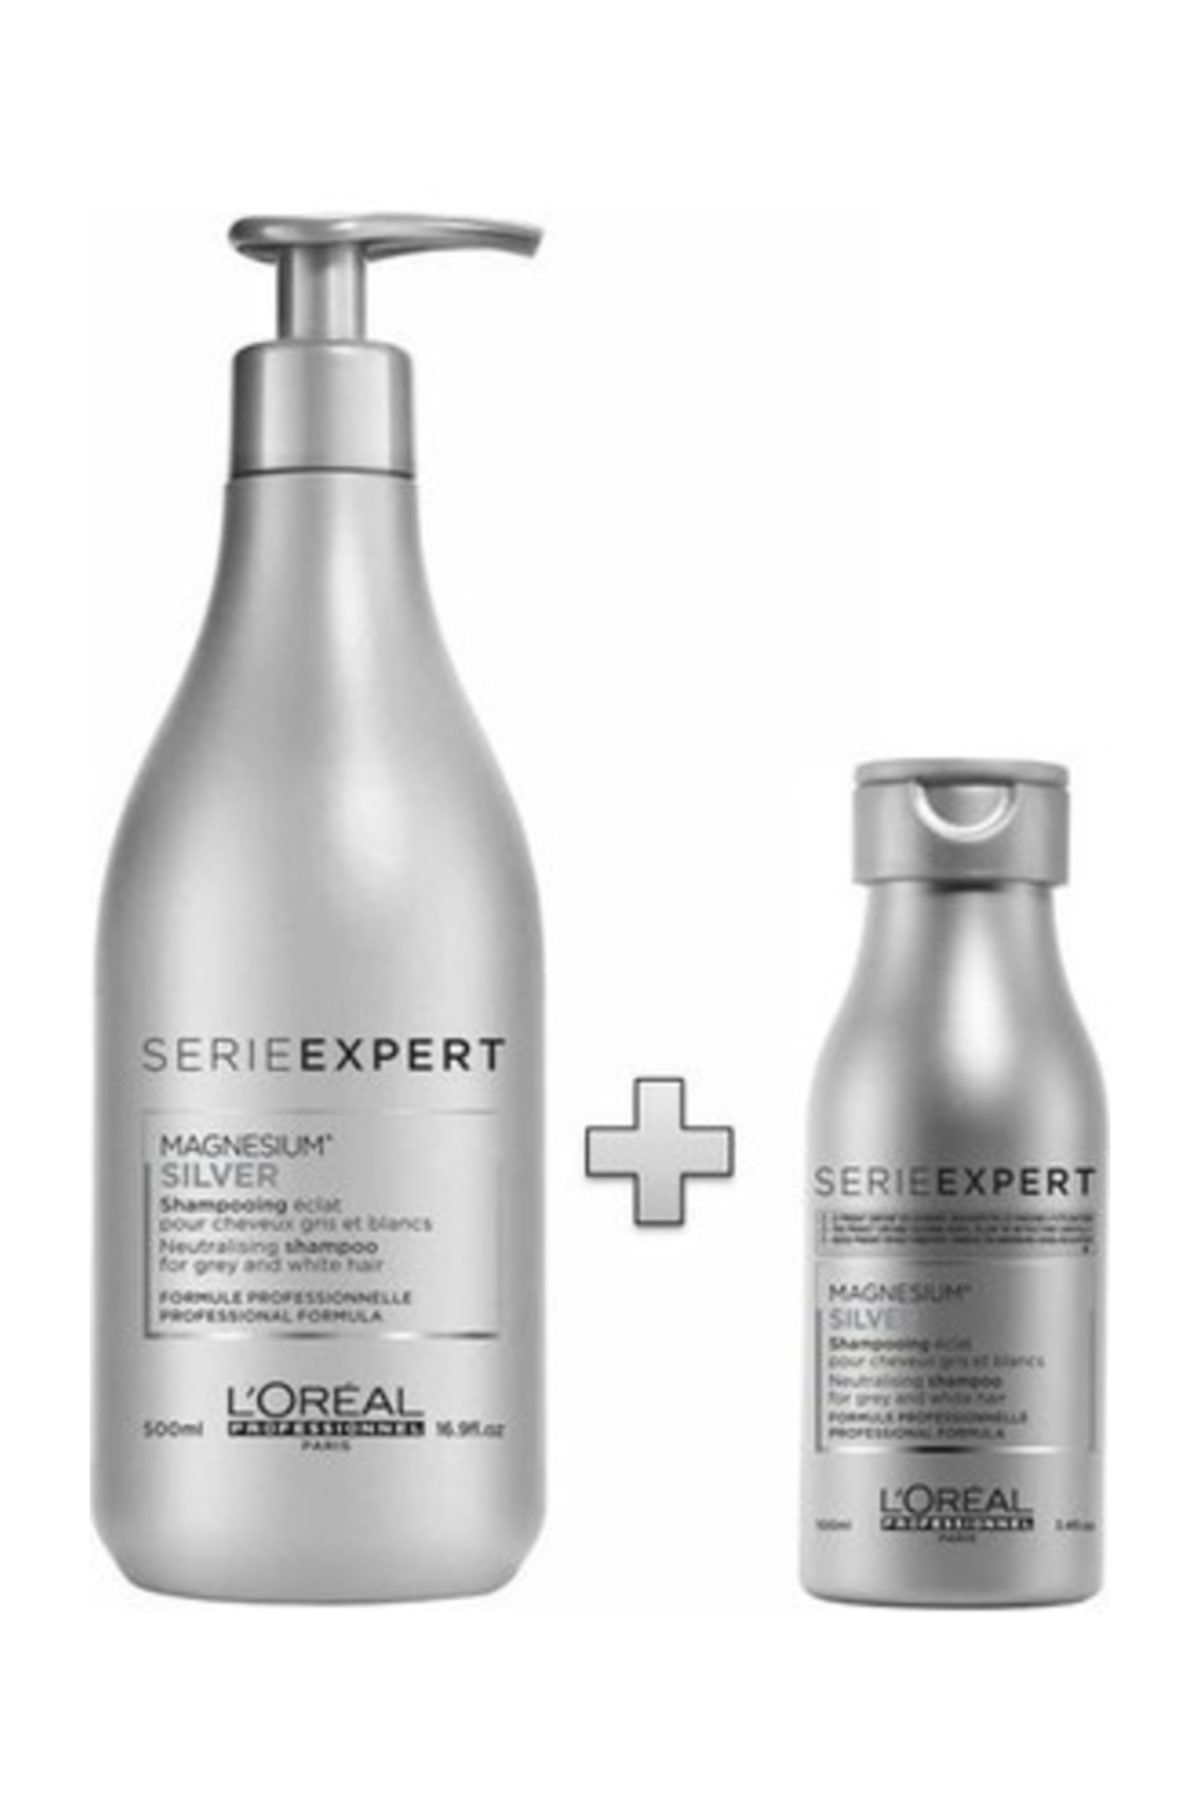 L'oreal Professionnel Silver Beyaz Ve Gri Saçlar Için Saç Bakım Şampuanı 500 Ml + Seyahat Boyu  100 ml.